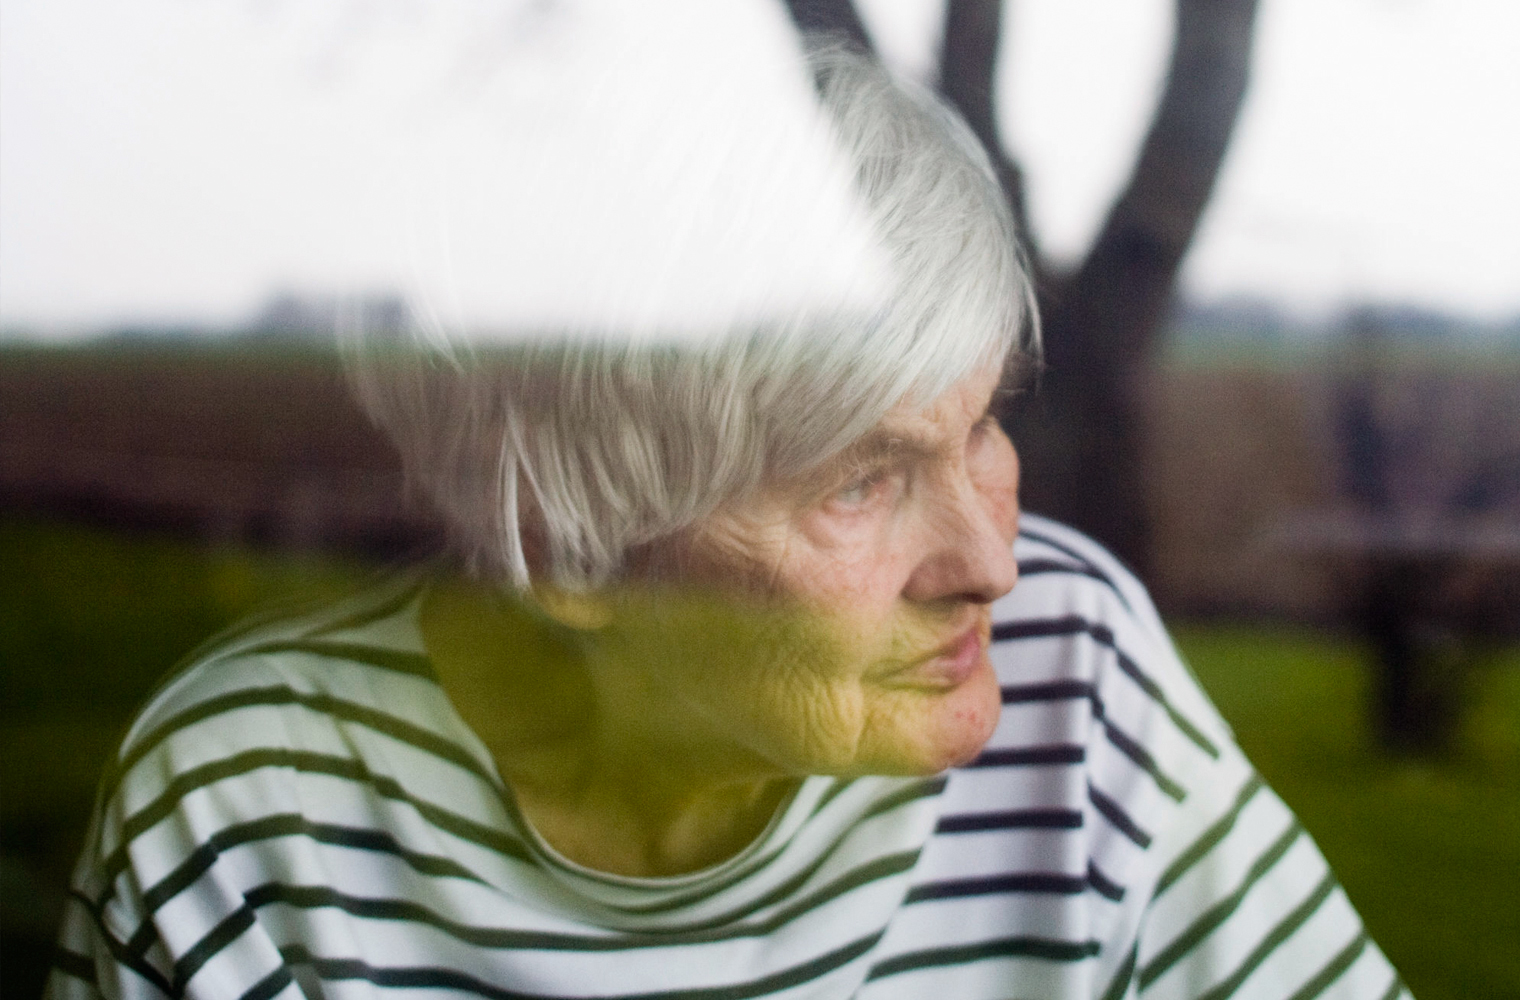 Eine ältere Dame steht am geschlossenen Fenster und schaut in den Garten.